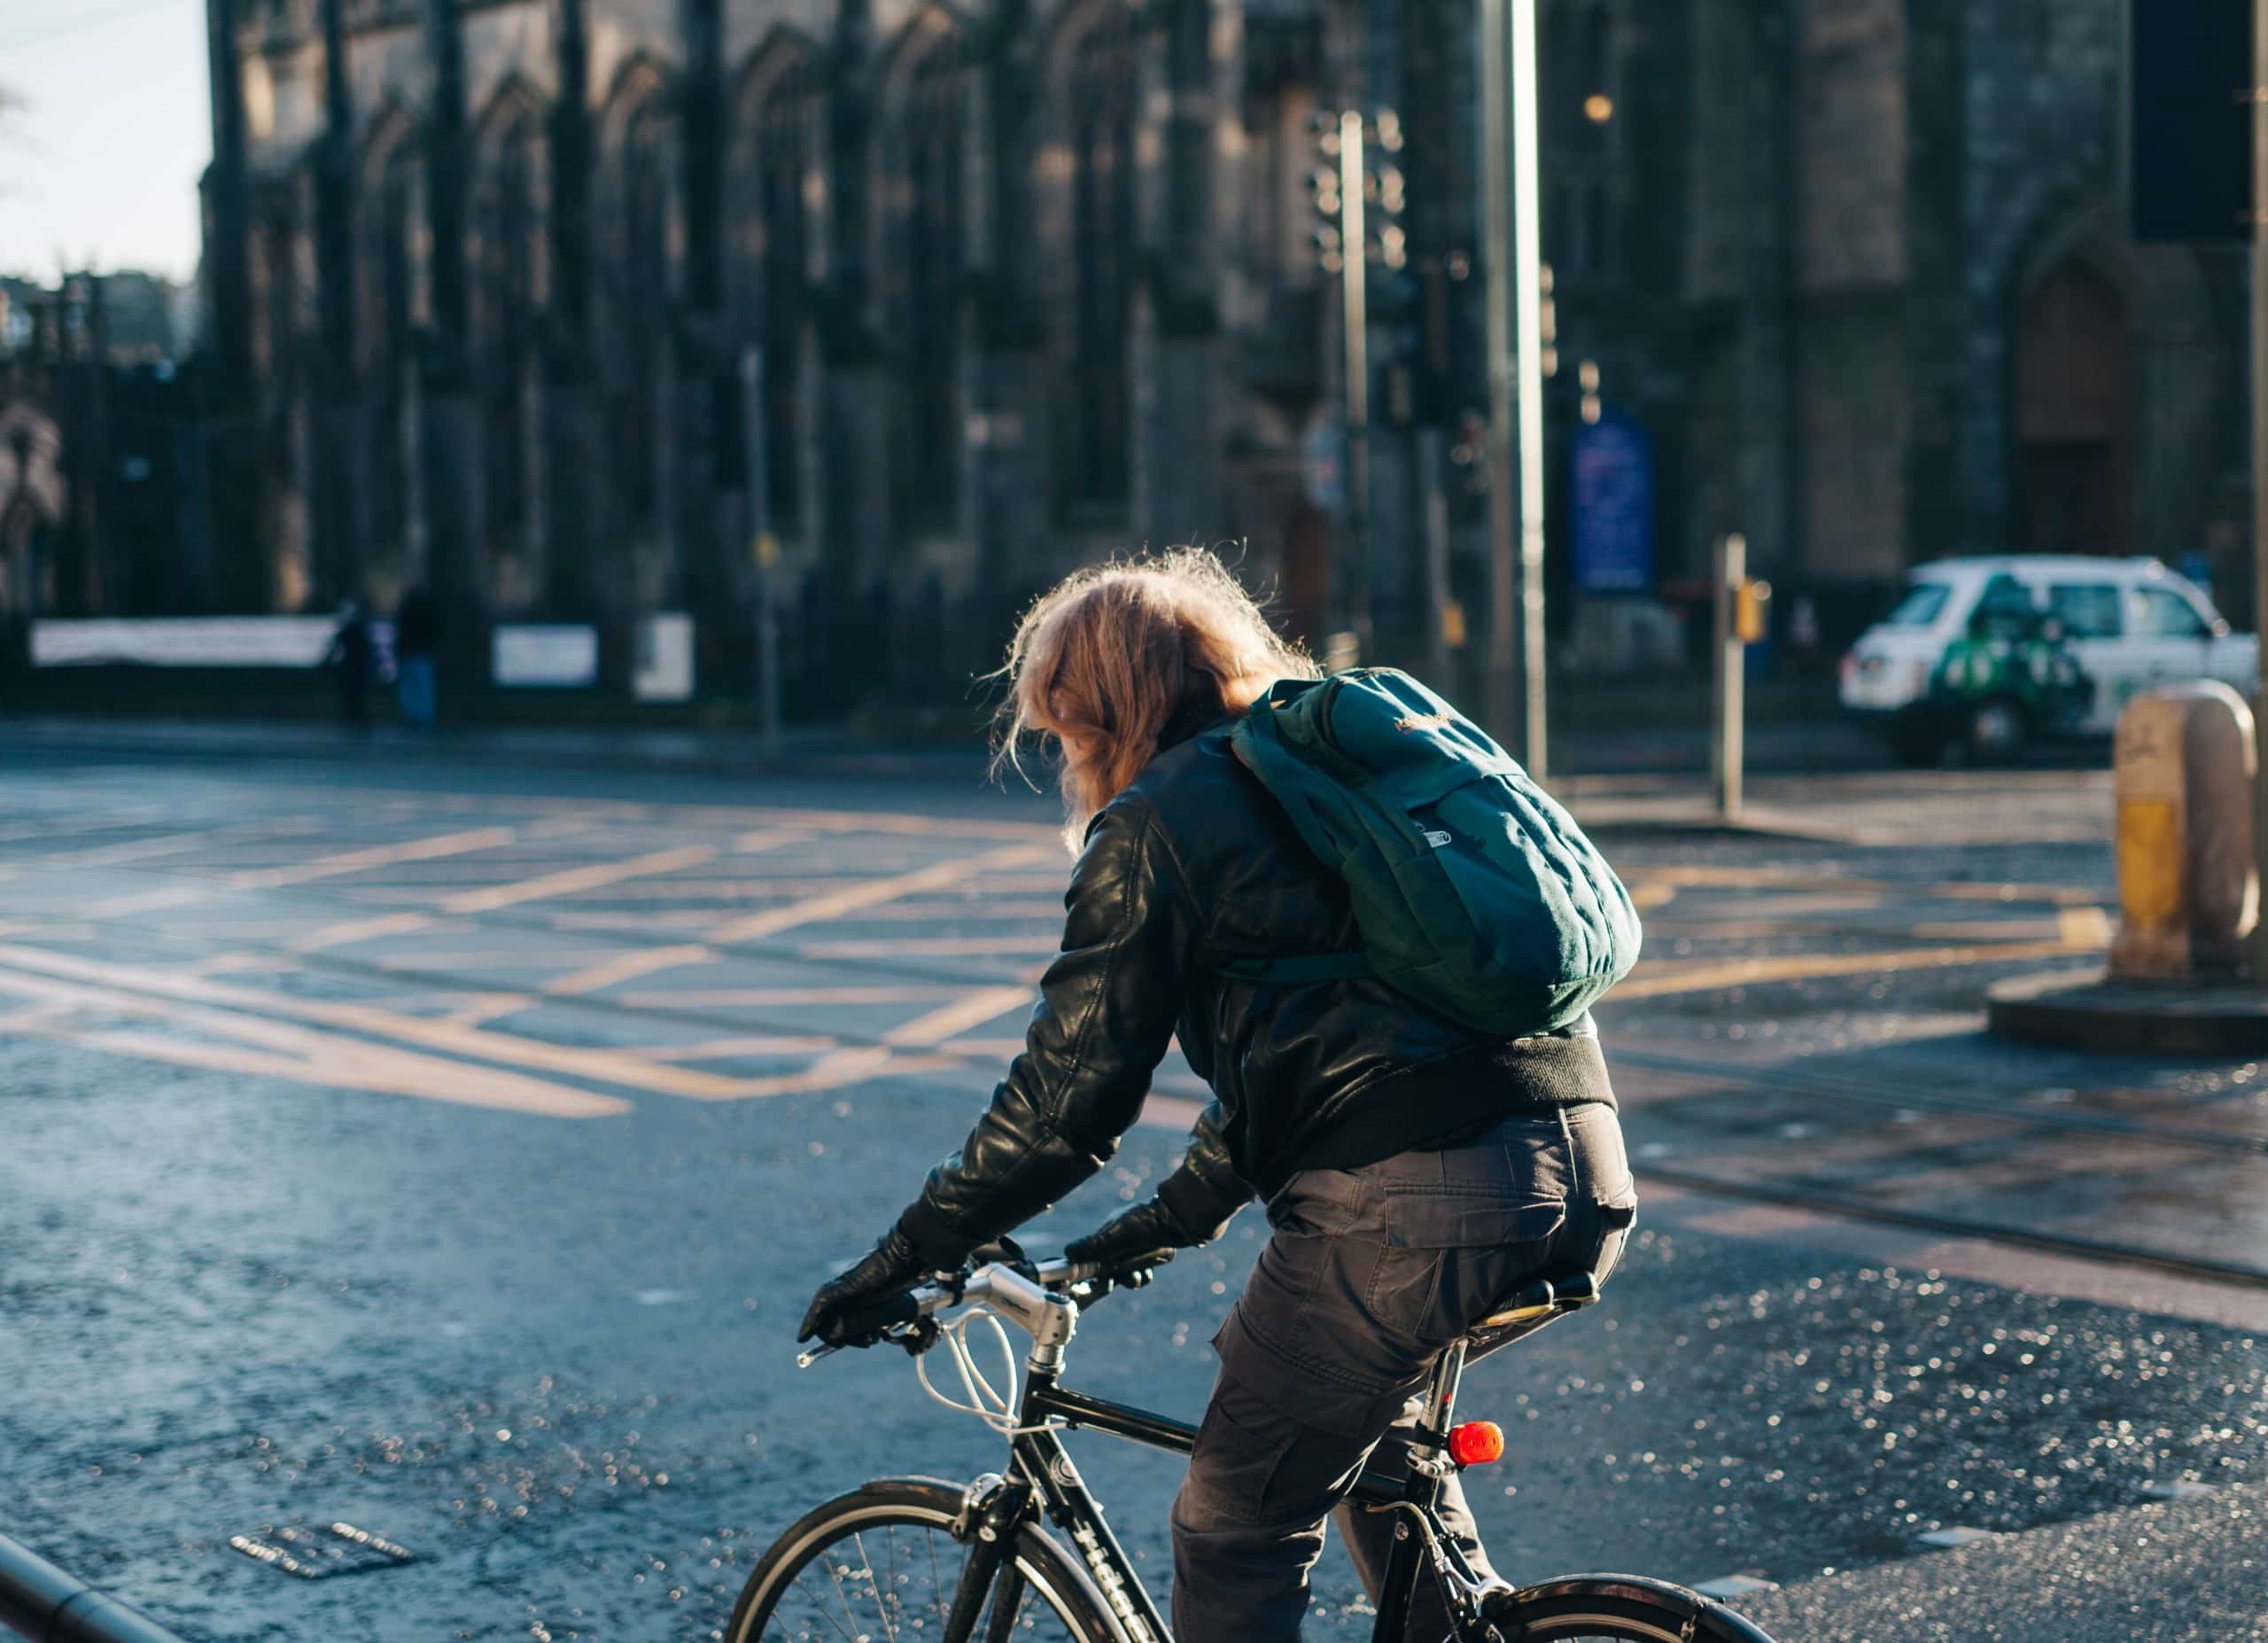 Im Vordergrund eine Person mit Rucksack auf einem Fahrrad. Im Hintergrund eine Stadtkulisse mit gepflastertem Belag.